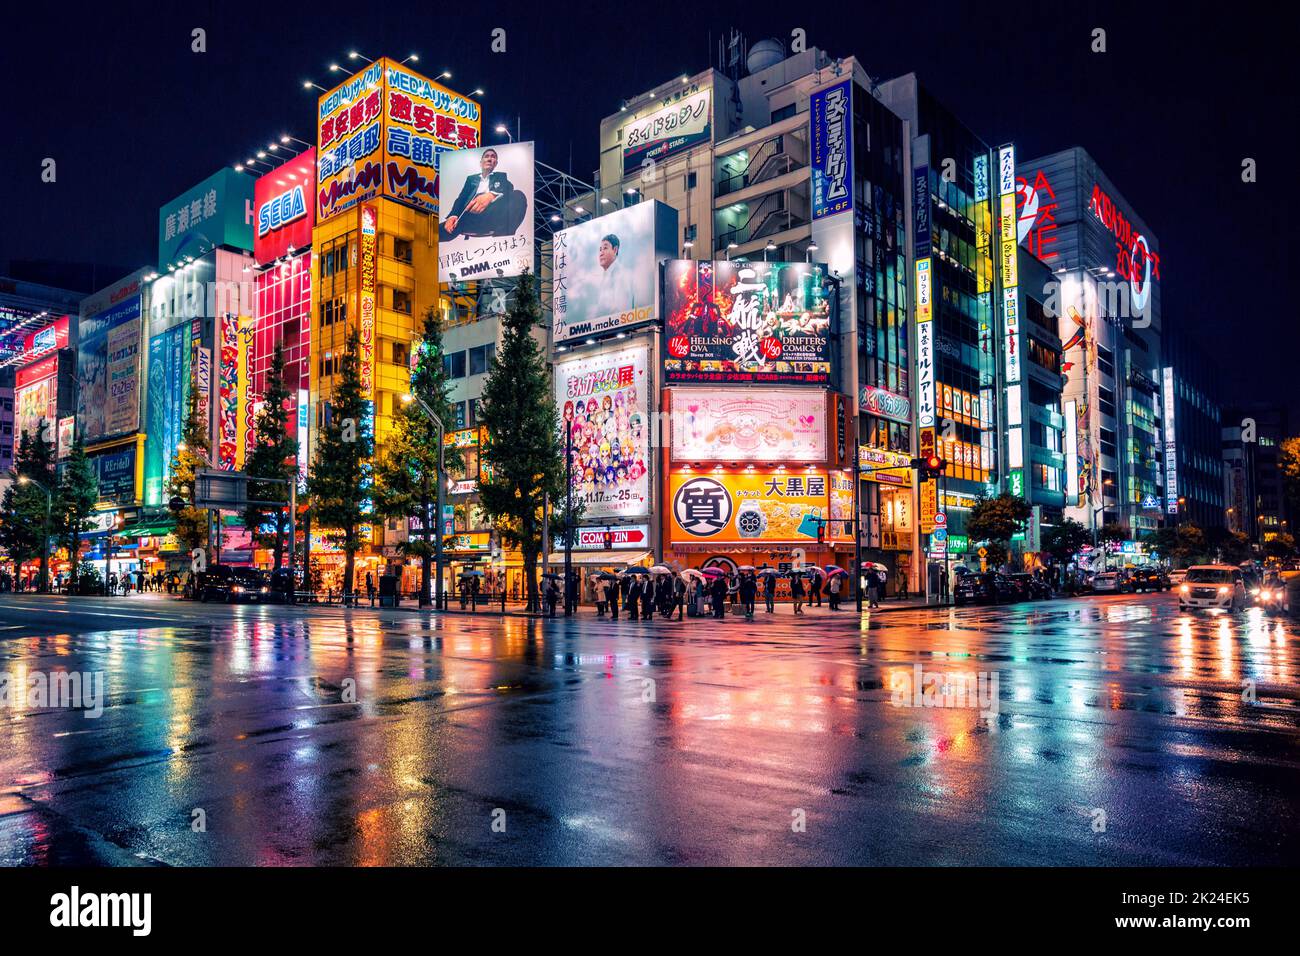 Tokyo, Japan - November 19, 2018: Neon lights and billboard advertisements on buildings at Akihabara at rainy night. Akihabara is a shopping district Stock Photo